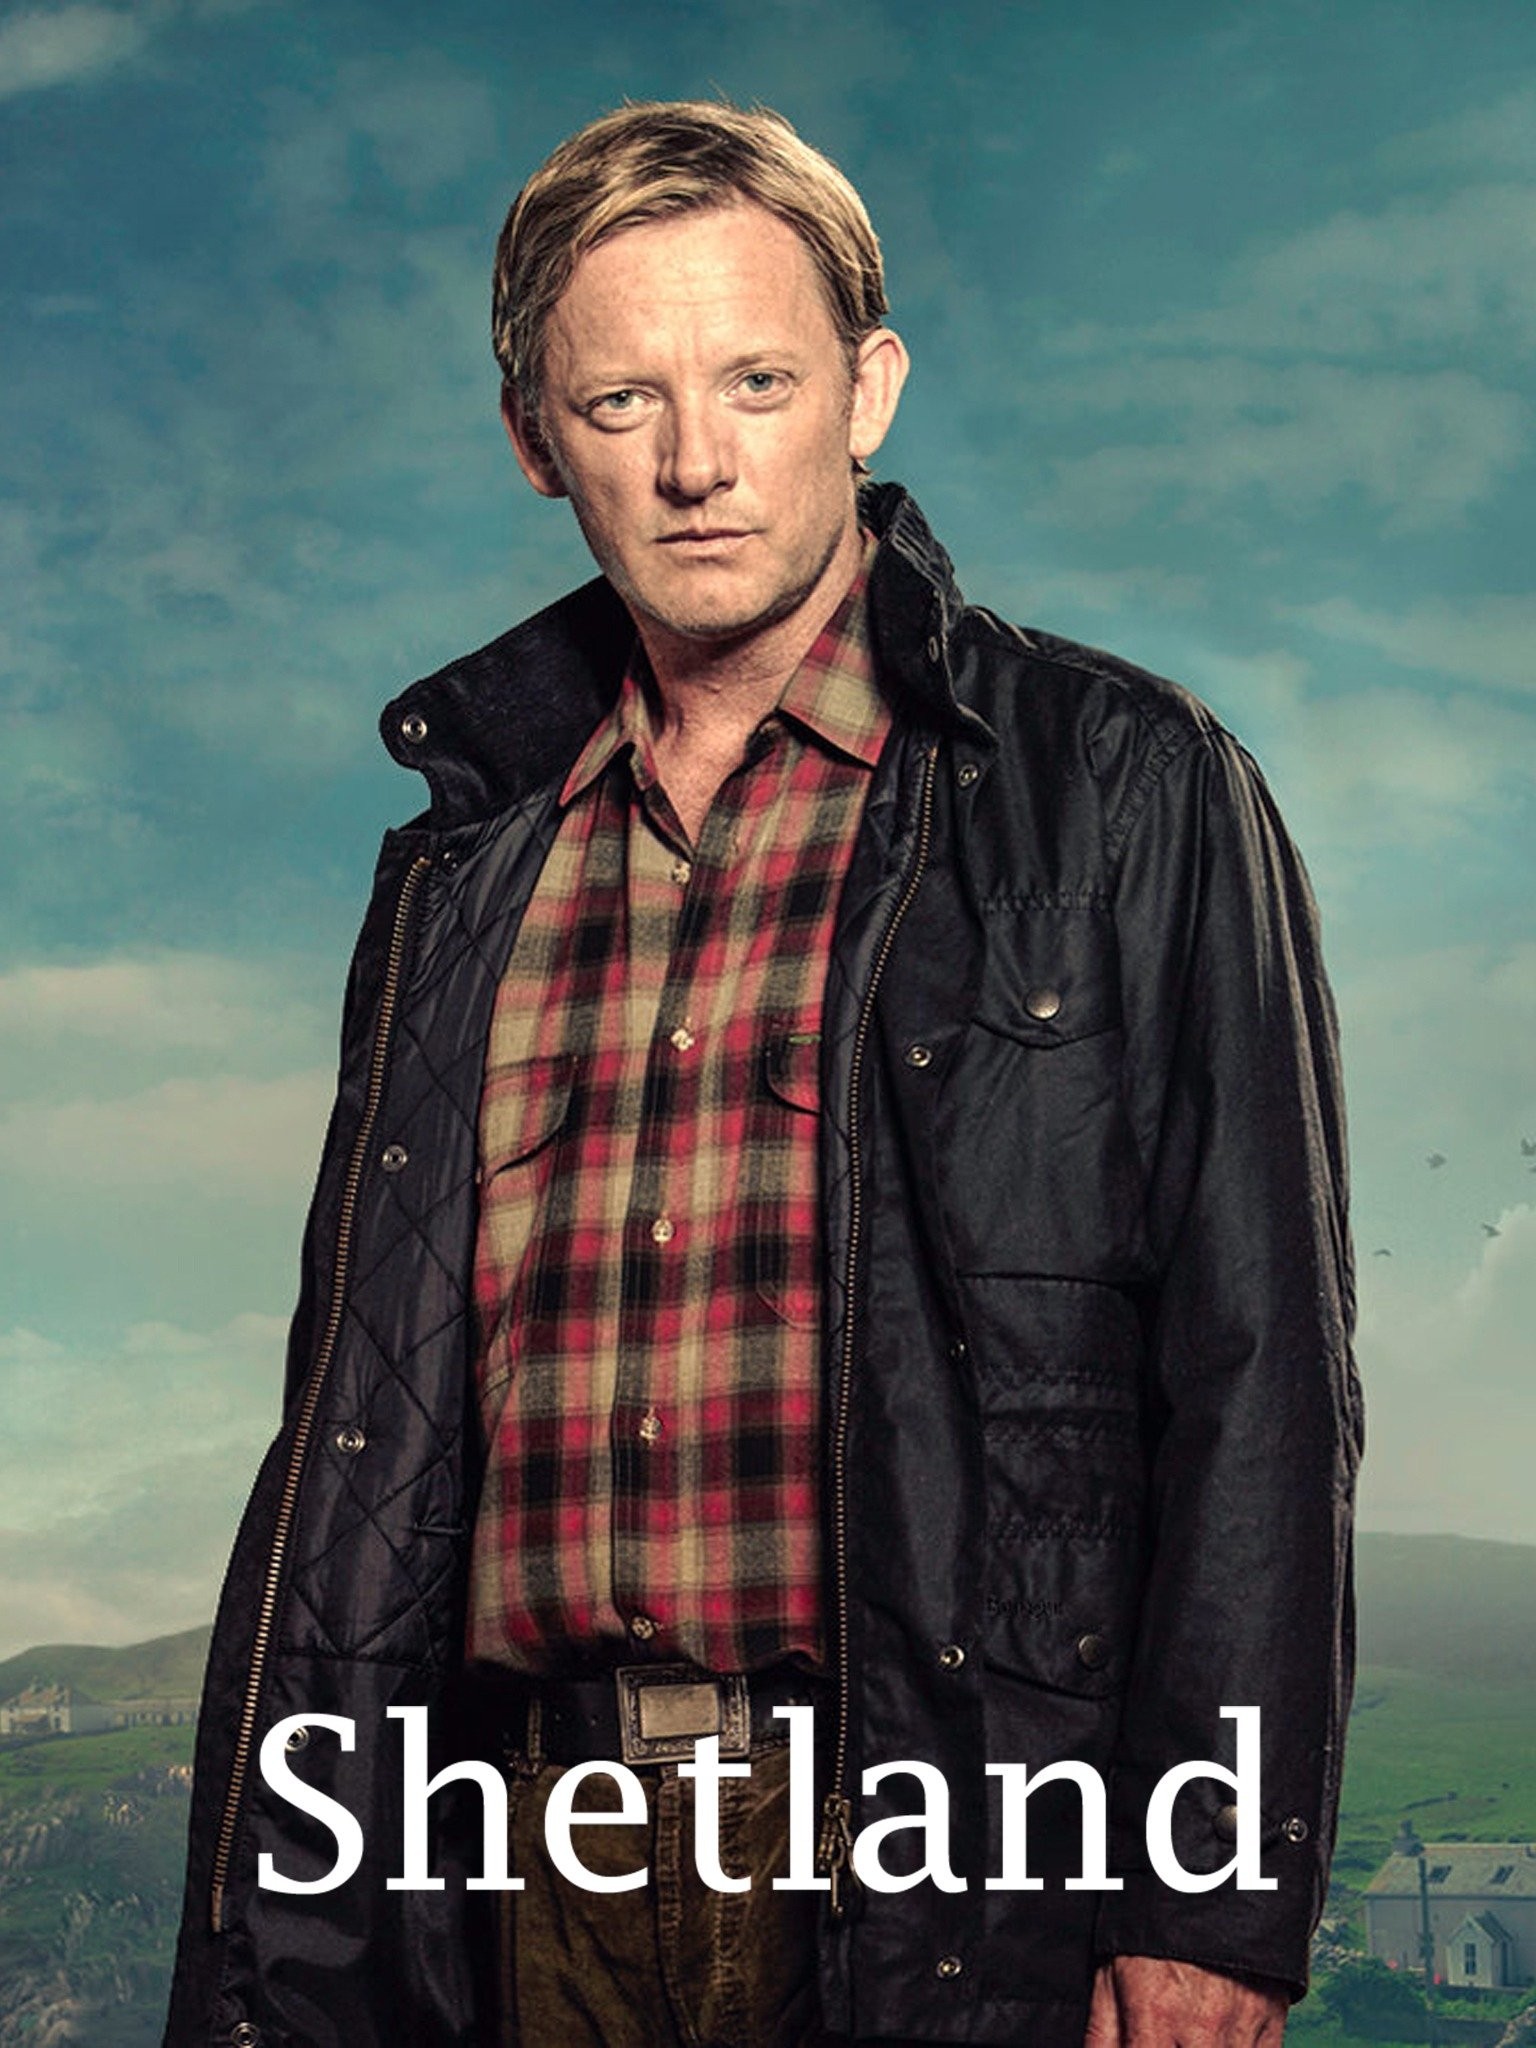 Shetland (TV Series 2013– ) - IMDb